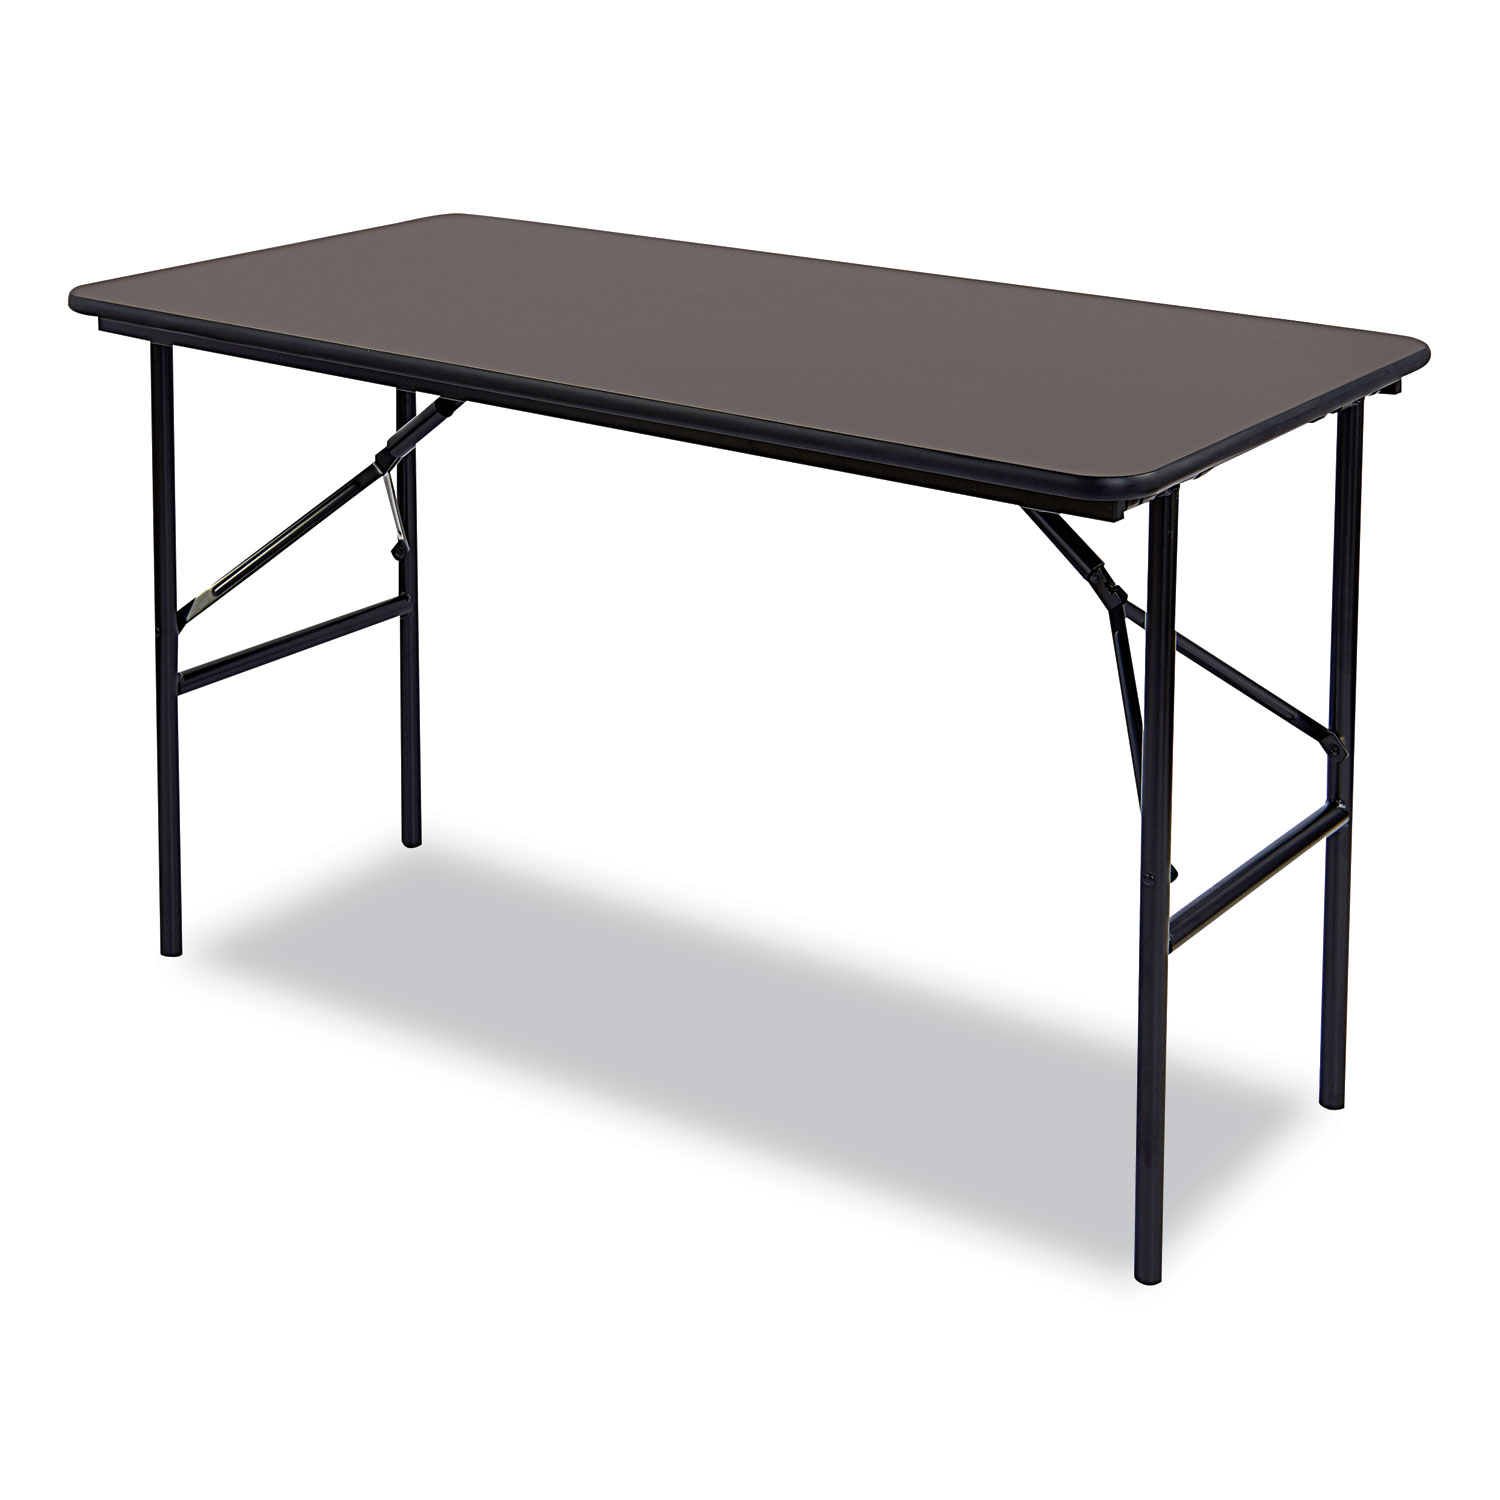  Iceberg 55304 Economy Wood Laminate Folding Table, Rectangular, 48w x 24d x 29h, Walnut (ICE55304) 